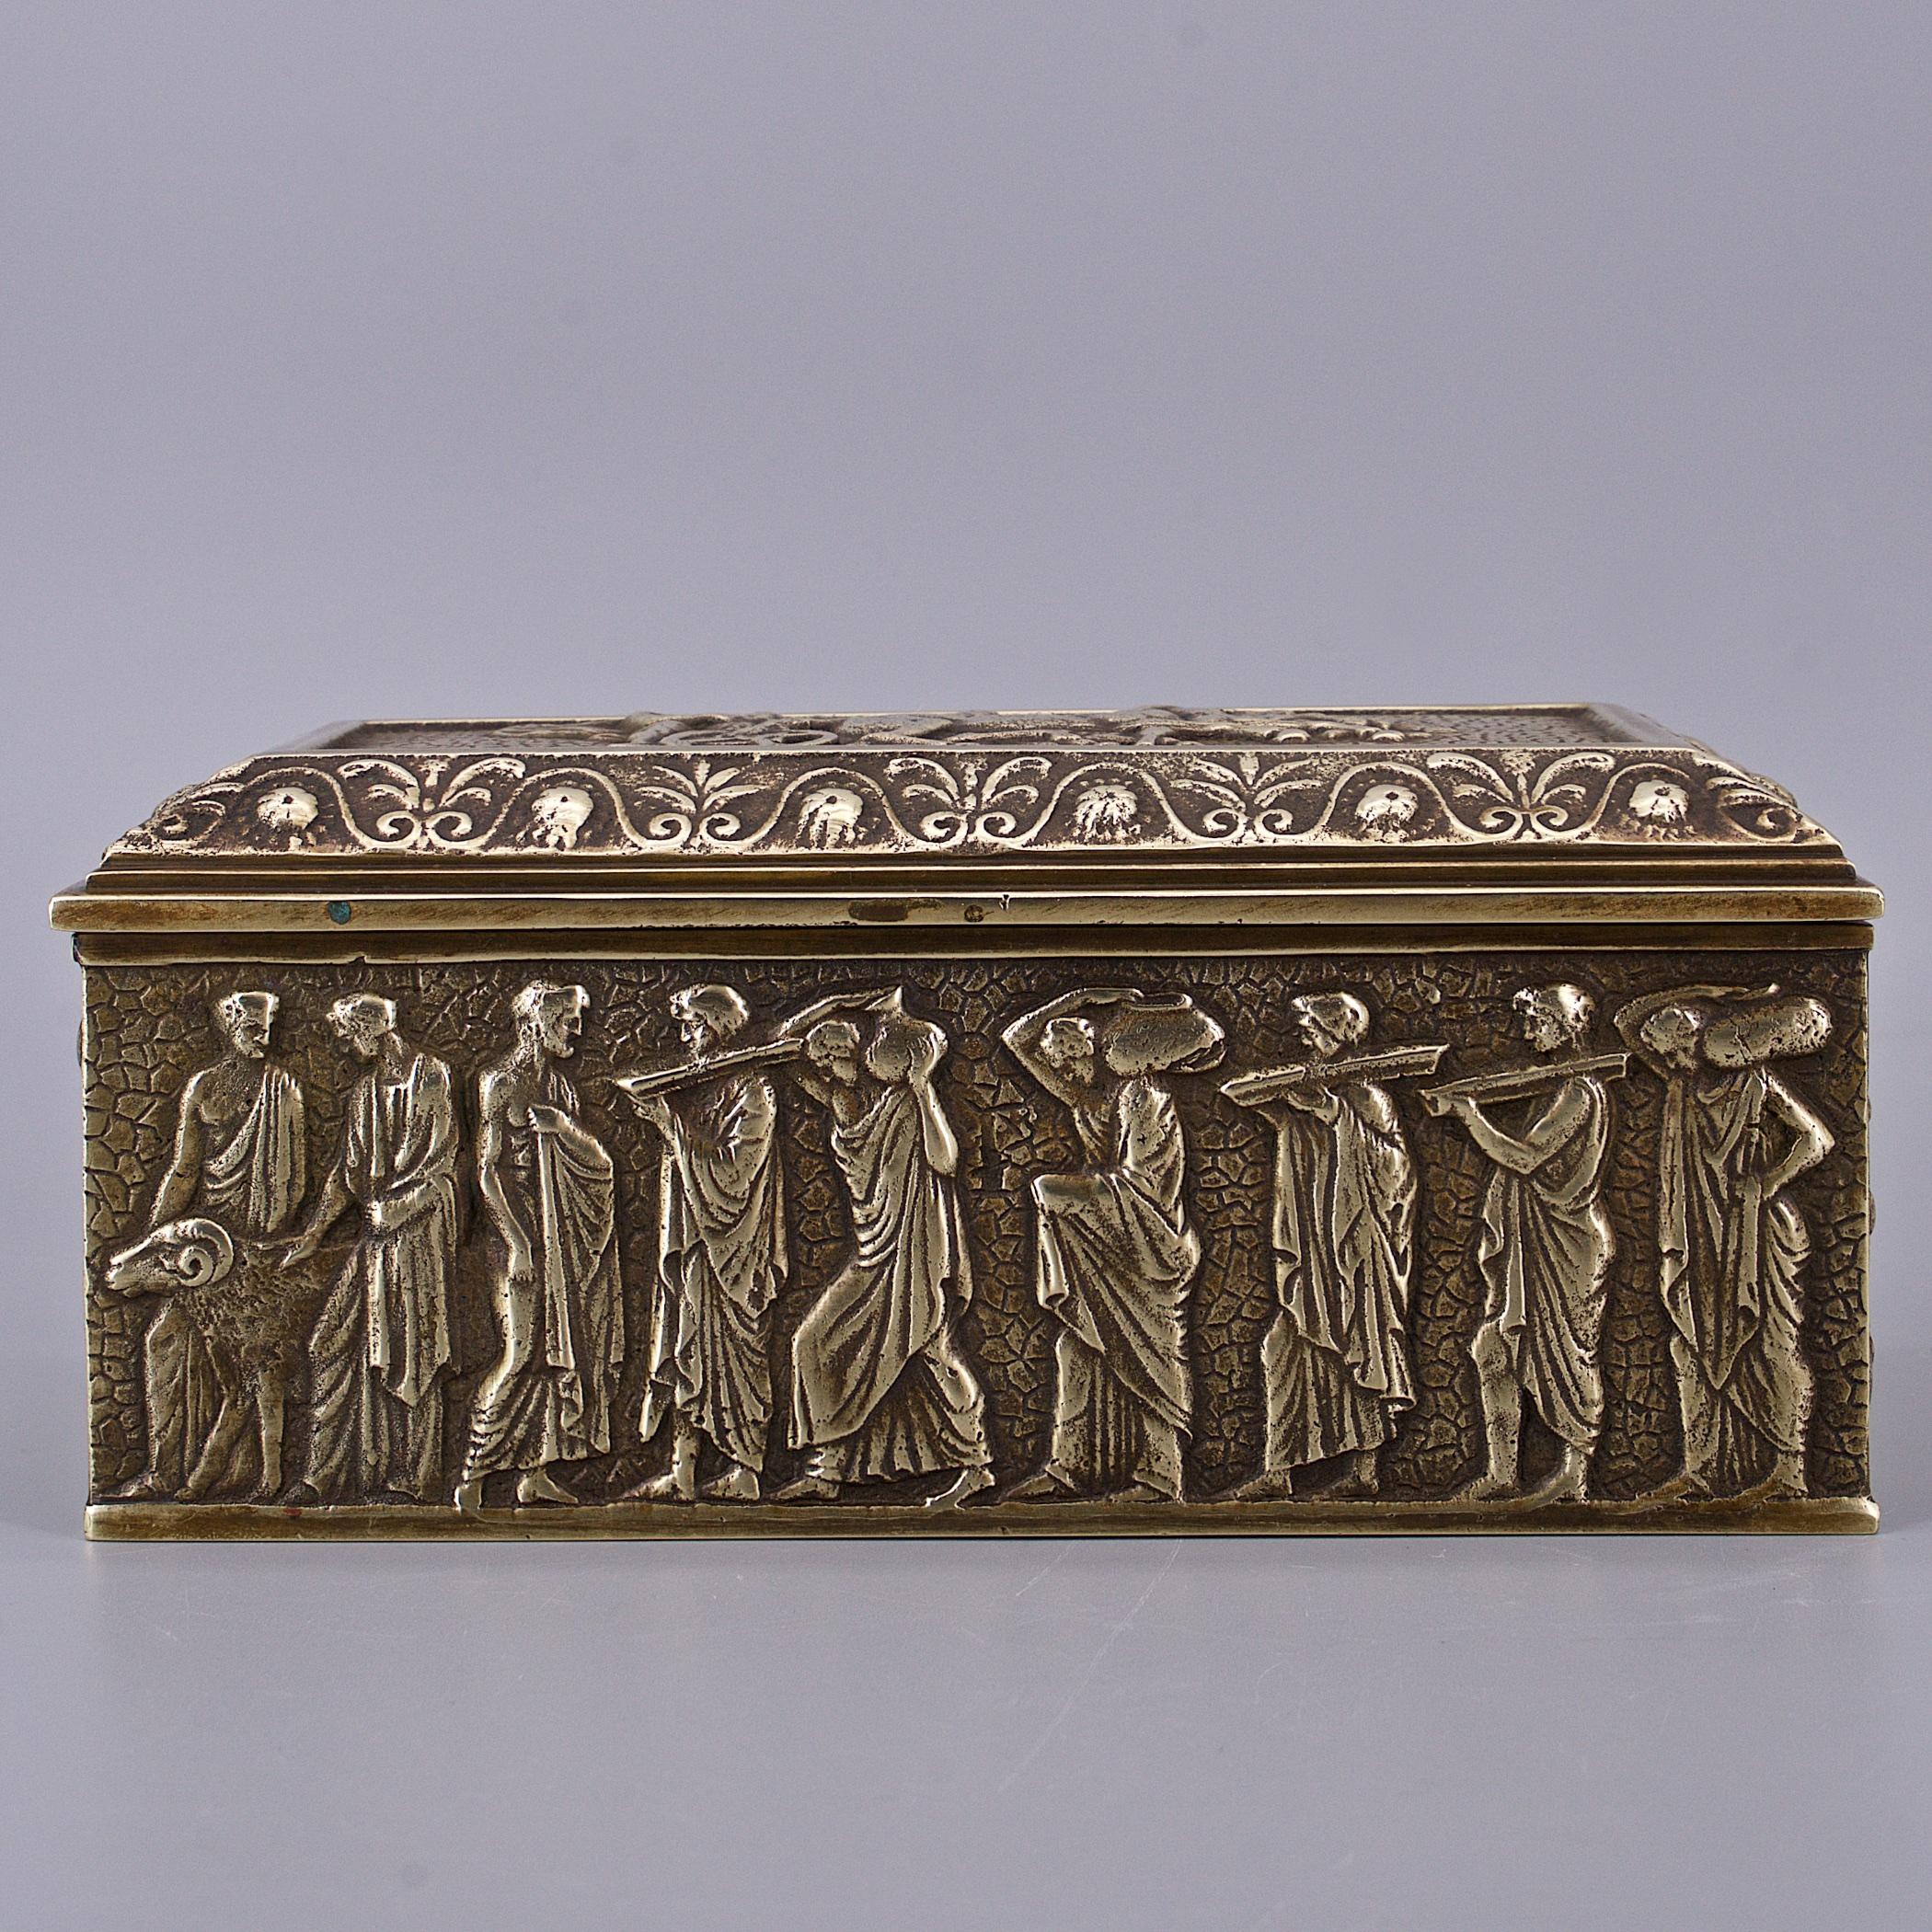 Magnifique boîte en bronze coulé, à charnière et à couvercle, légèrement polie et brillante. Représentation de scènes en relief ou de personnages de l'Antiquité romaine ou grecque. Aucune marque de fabricant n'a été trouvée sur la boîte.